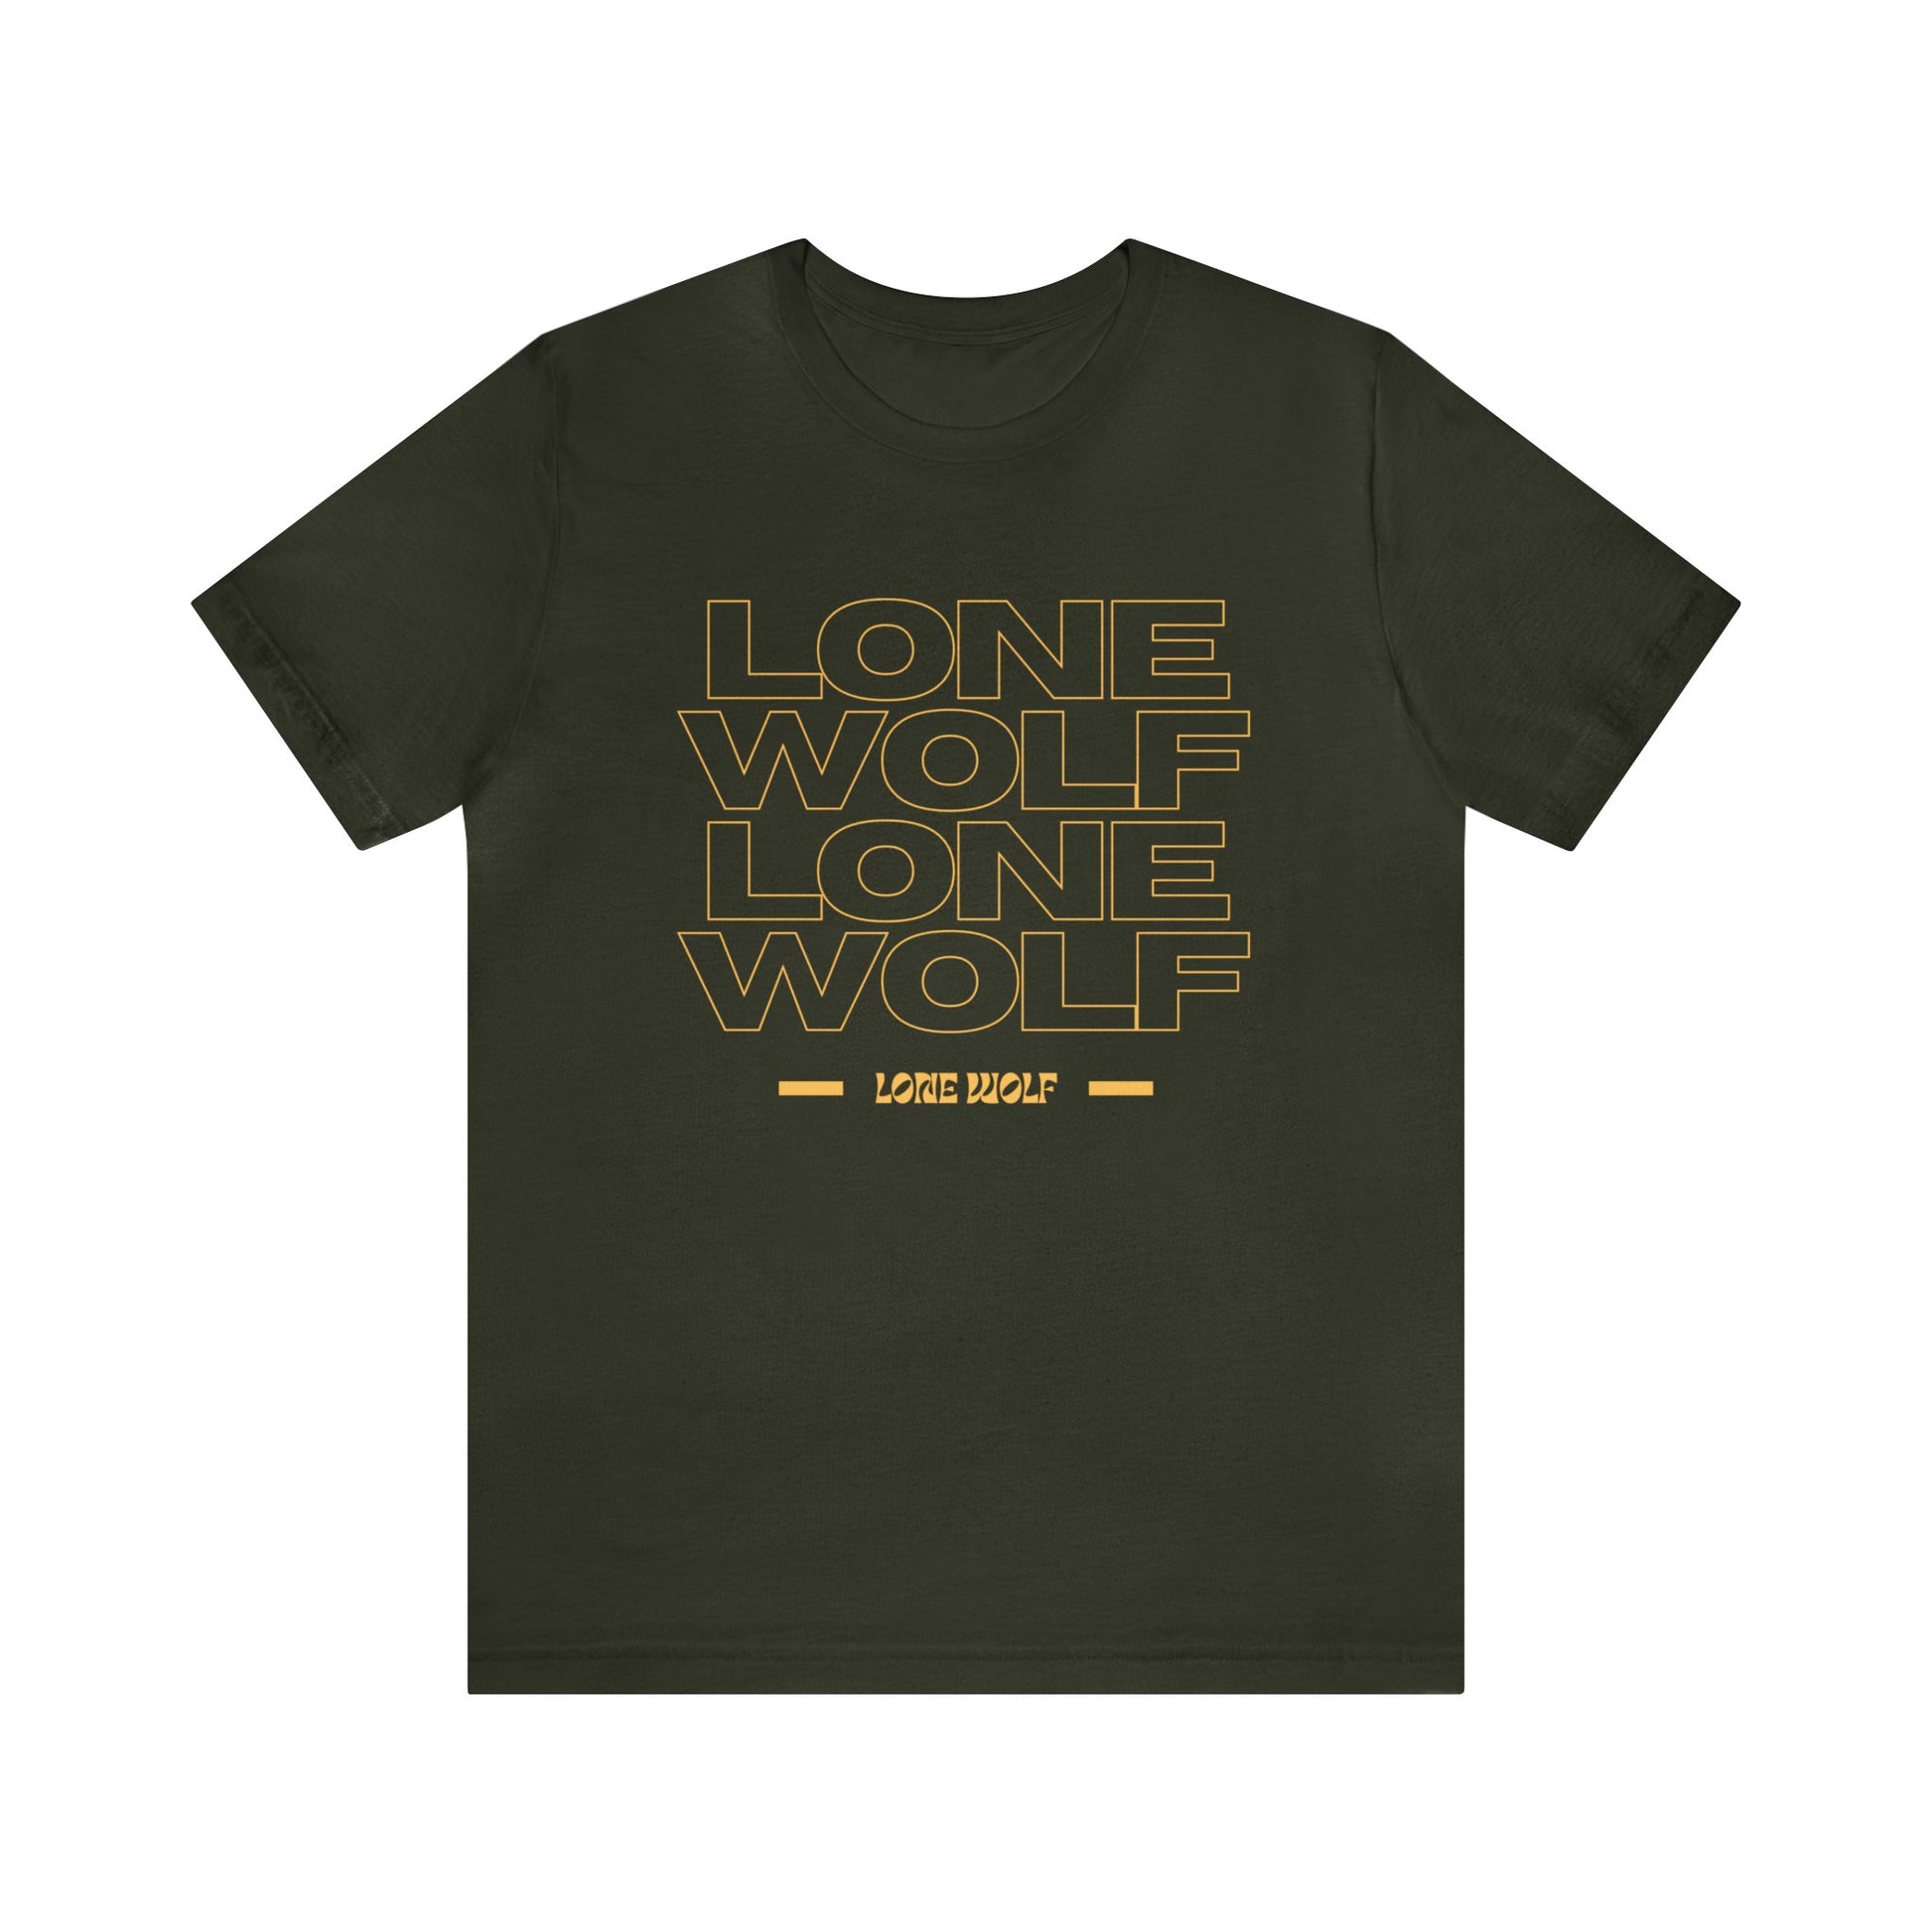 Lone Wolf Tattoo T-shirt / Traditional Tattoo Tee Shirt / Punk Rock Clothing Tshirt Rockabilly Psychobilly Freak Goth - Foxlark Crystal Jewelry